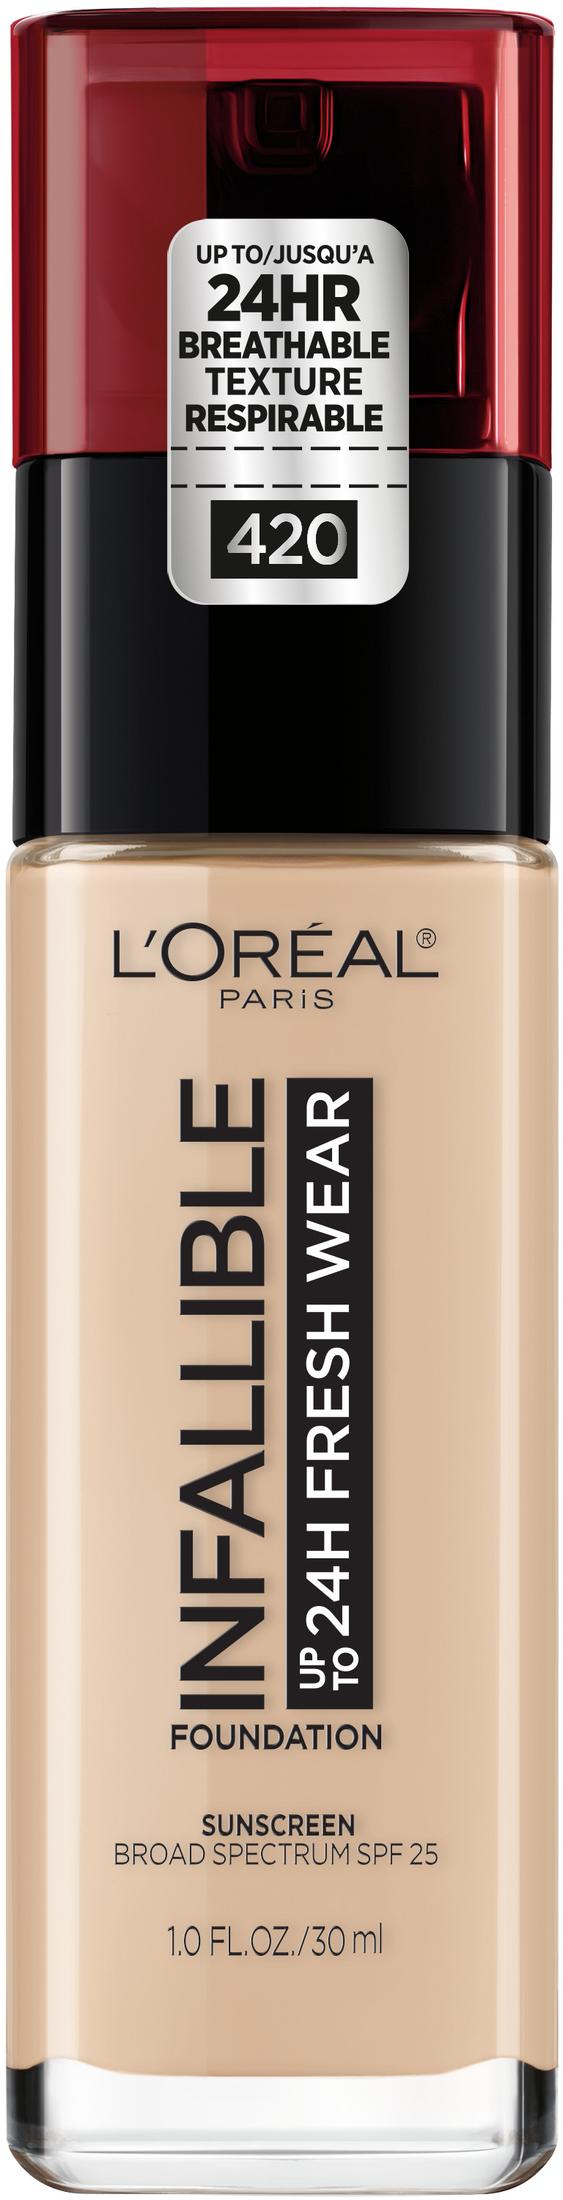 L'Oreal Paris Infallible Fresh Wear 24 Hr Liquid Foundation Makeup, 420 True Beige, 1 fl oz - image 1 of 11